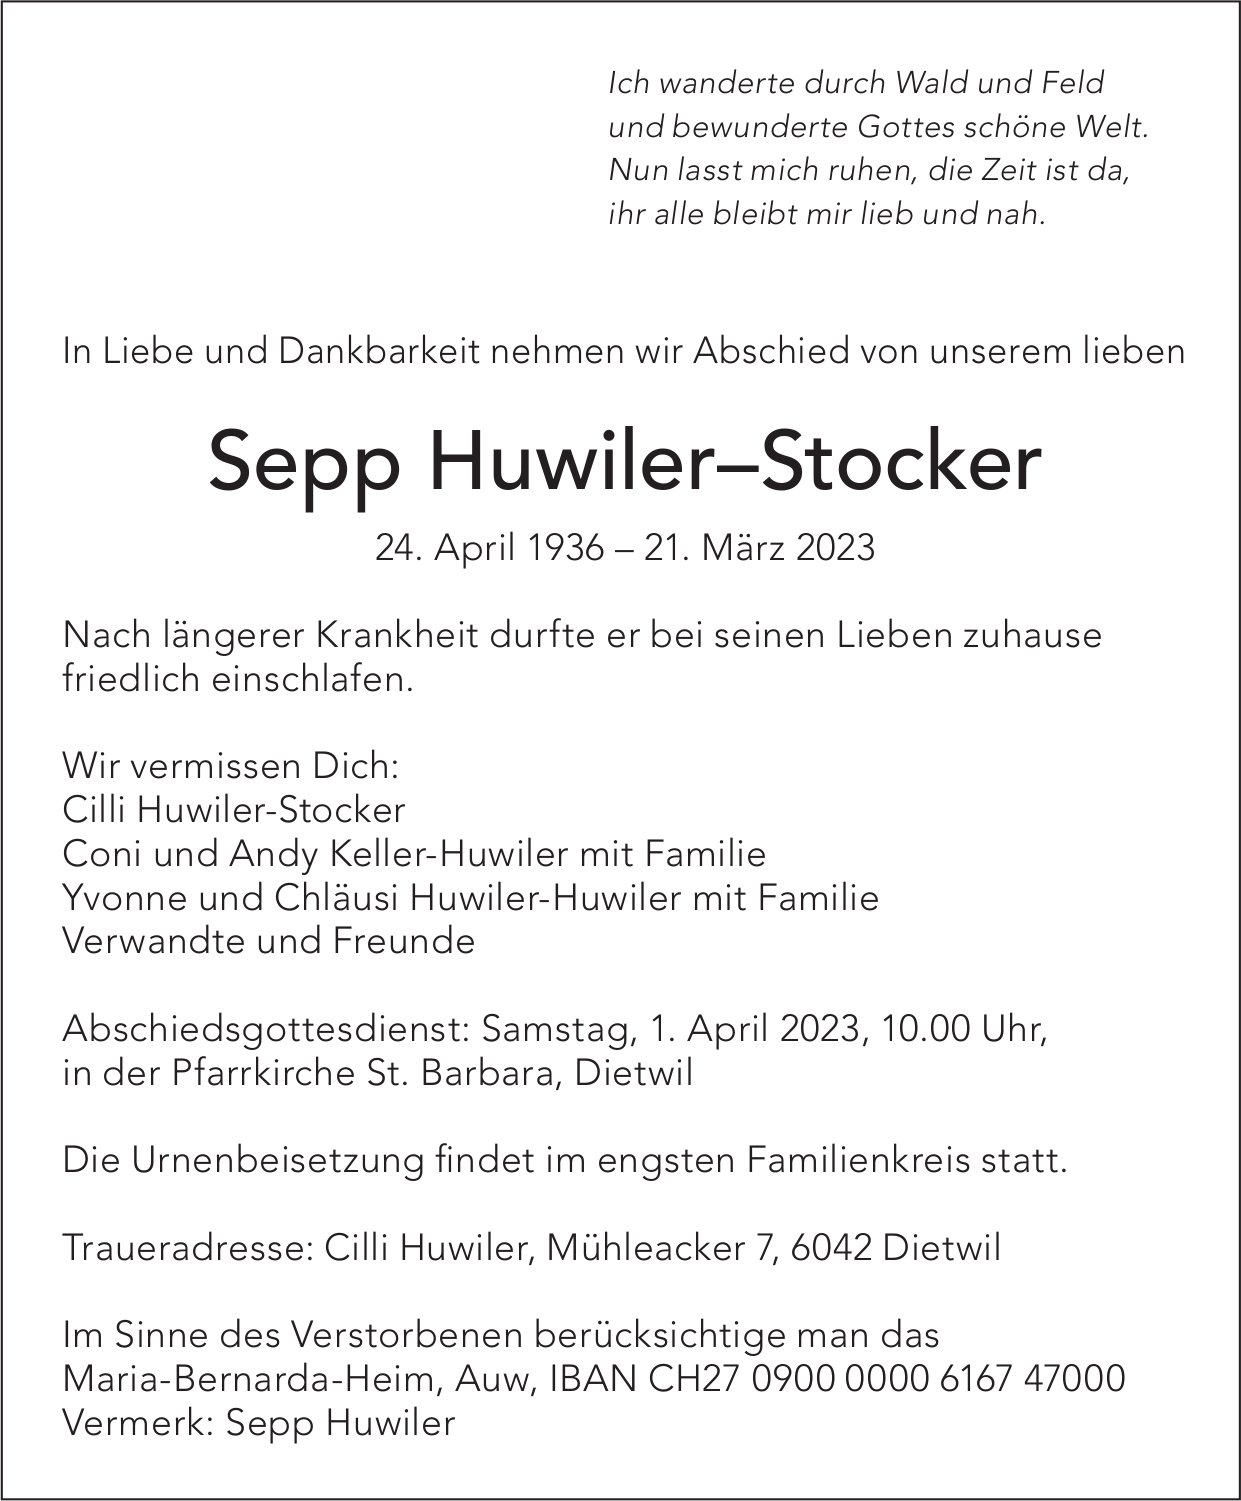 Huwiler–Stocker Sepp, März 2023 / TA